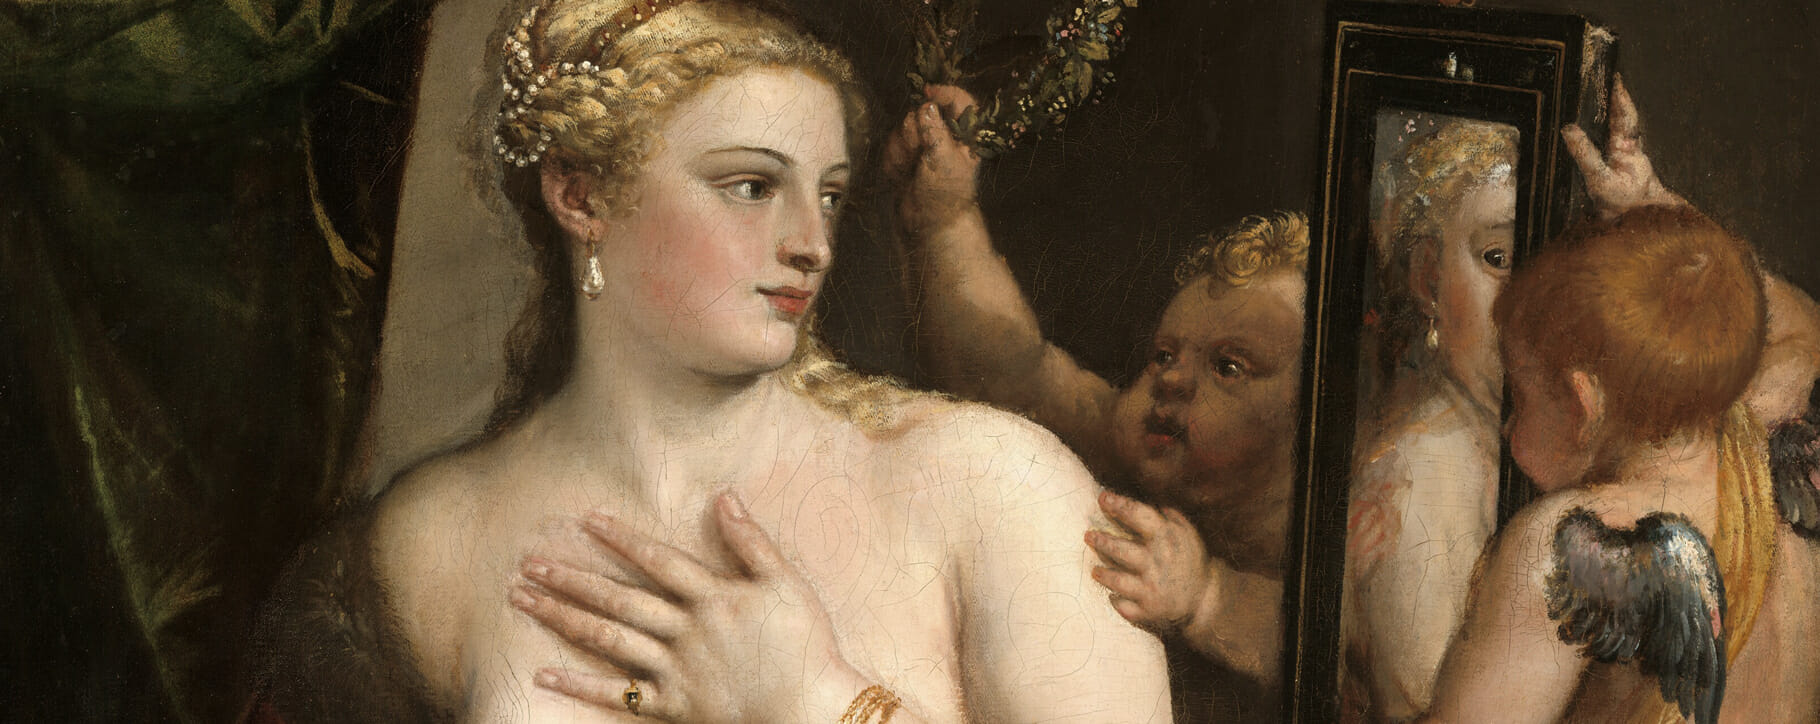 Veronese Venus with Mirror